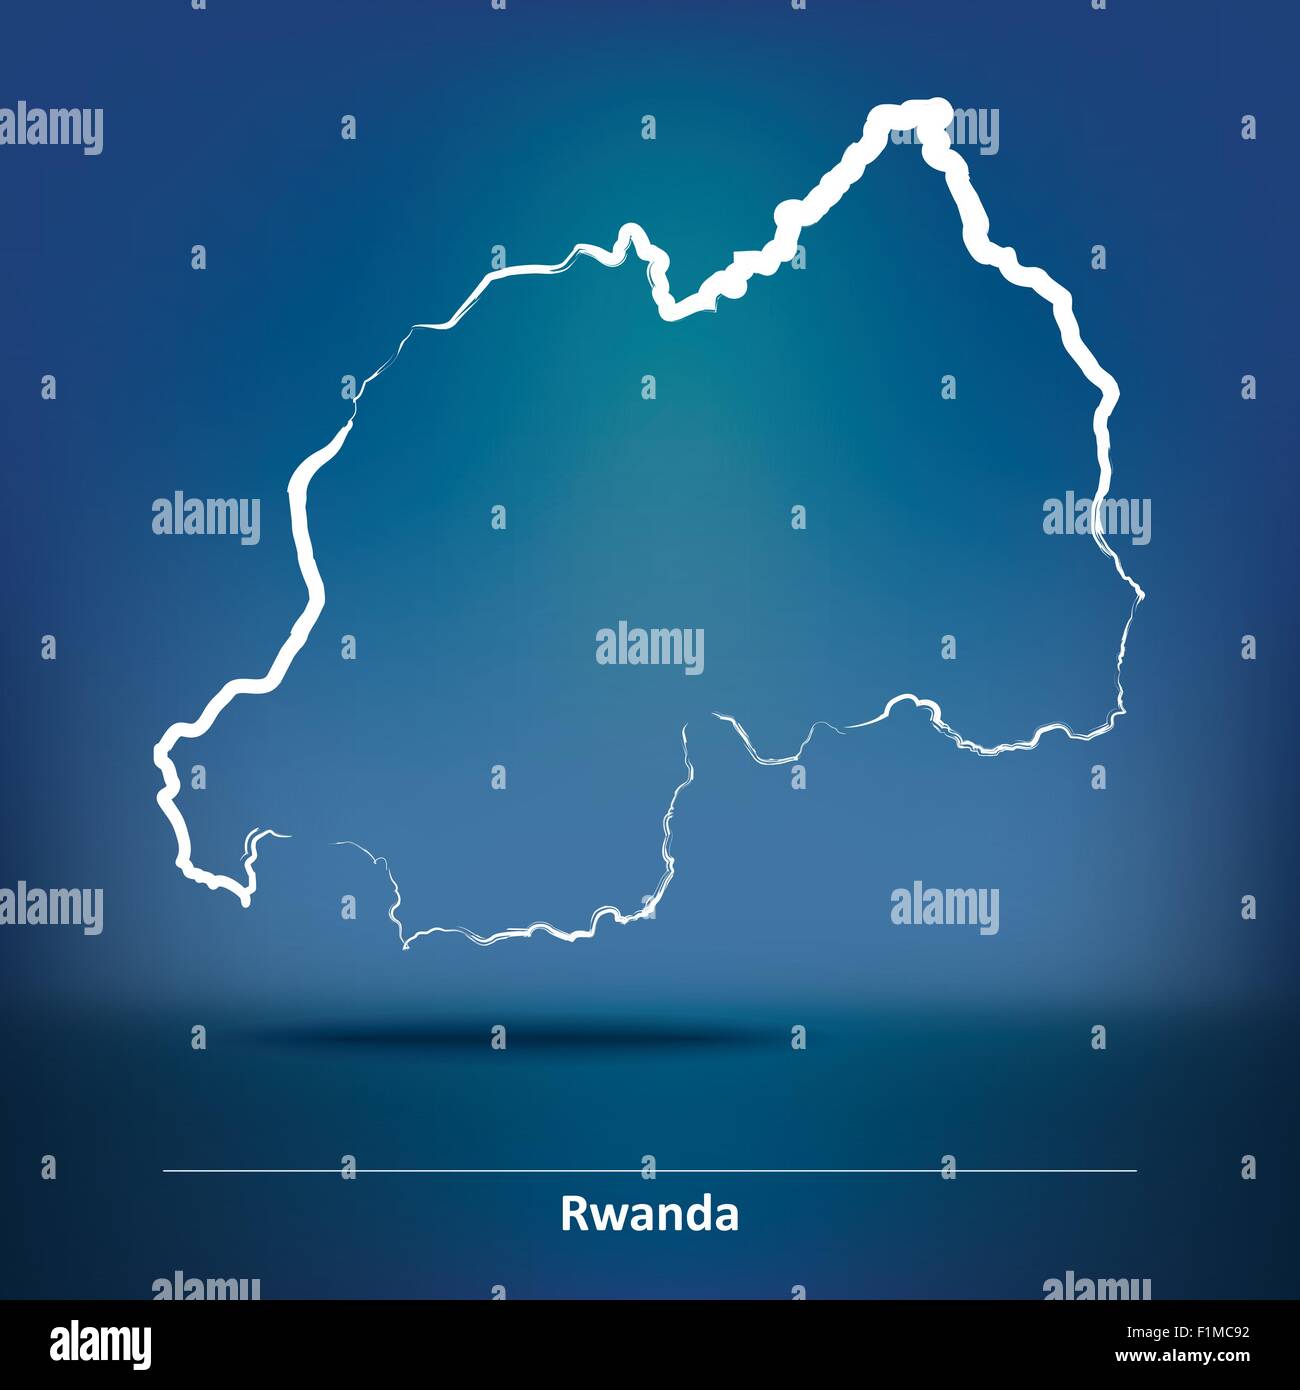 Karte von Ruanda - Vektor-Illustration Doodle Stock Vektor